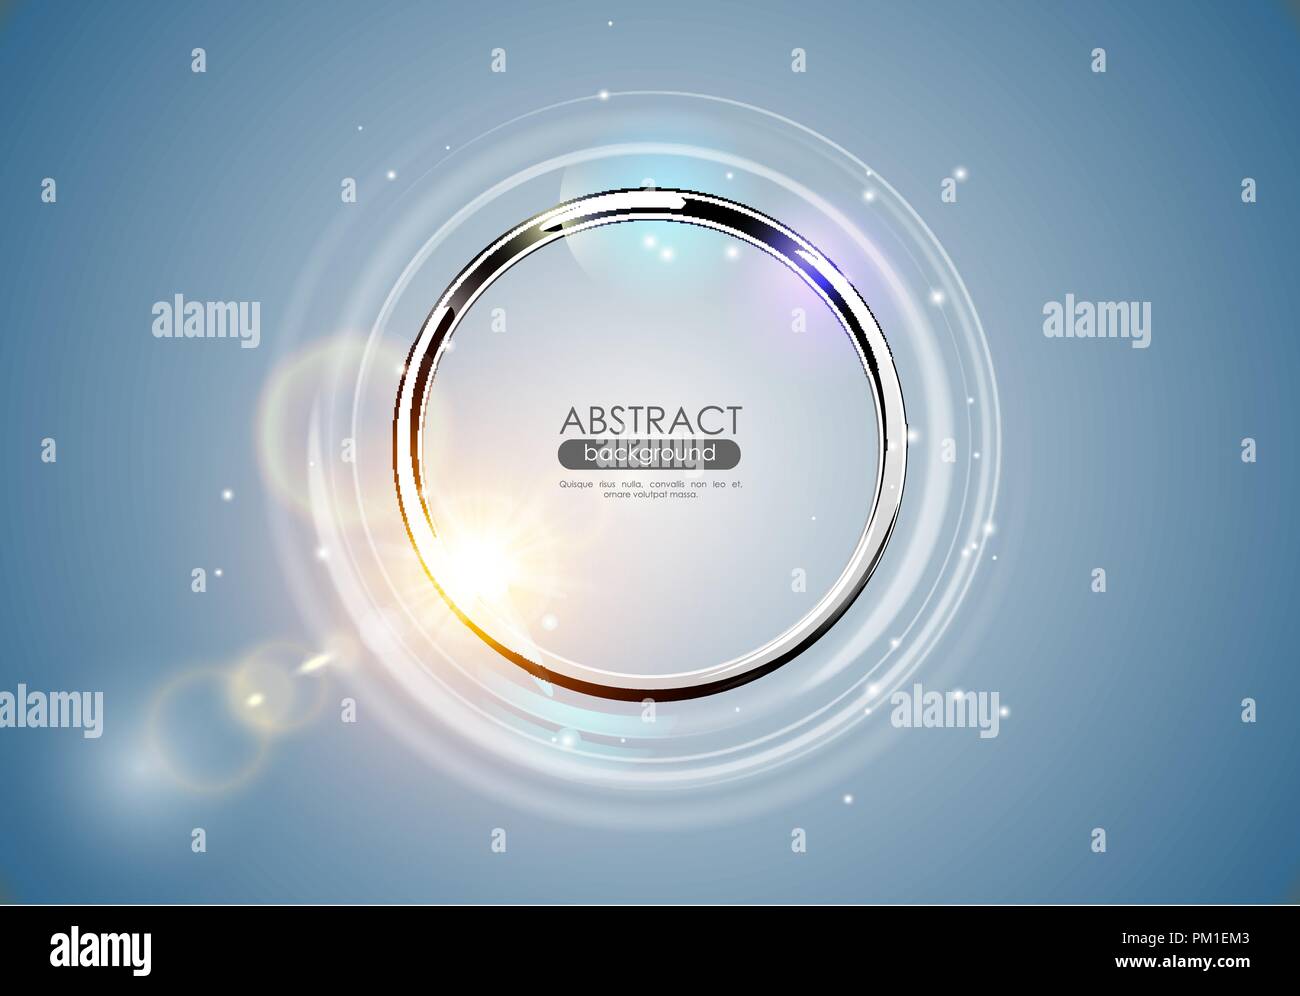 Résumé futuriste anneau métallique fond bleu. Chrome shine forme arrondie avec cercle de lumière et reflets Soleil Effet de lumière. Incandescent vecteur Illustration de Vecteur